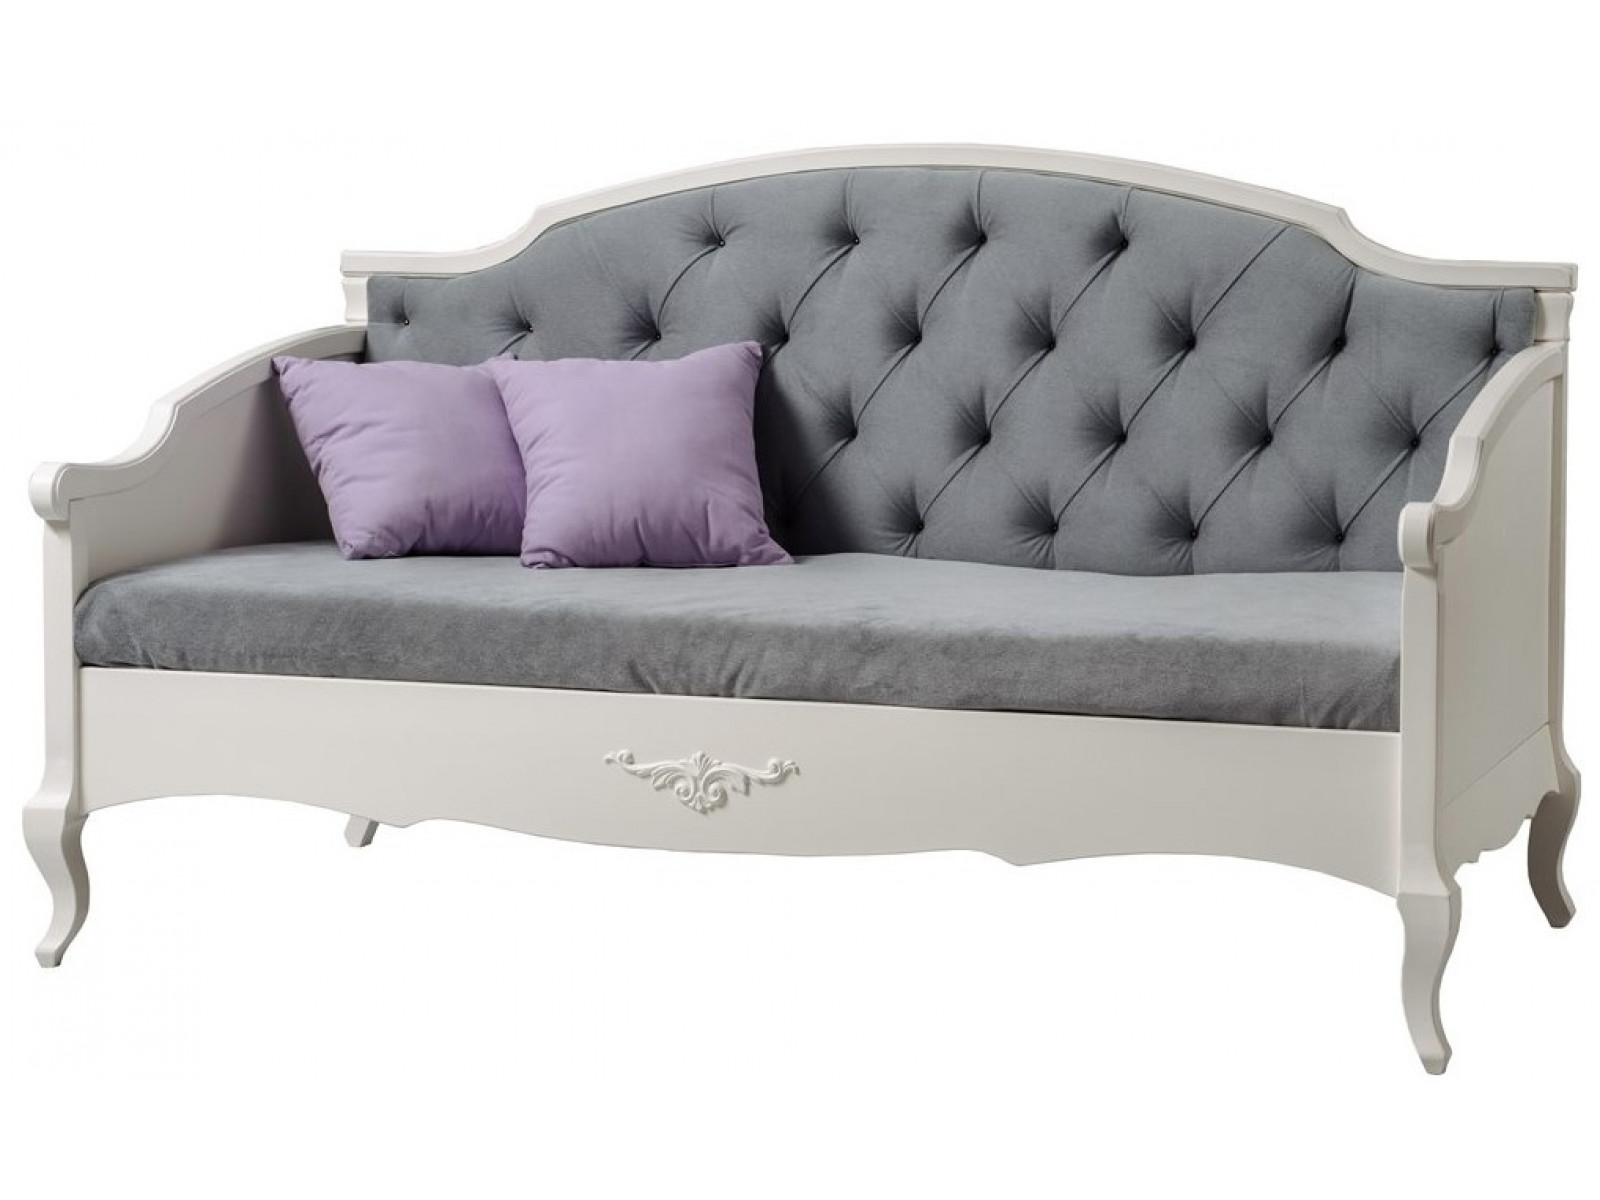 Кровать-диван с мягкой спинкой Ари Прованс купить по выгодной цене в интернет-магазине MiaSofia